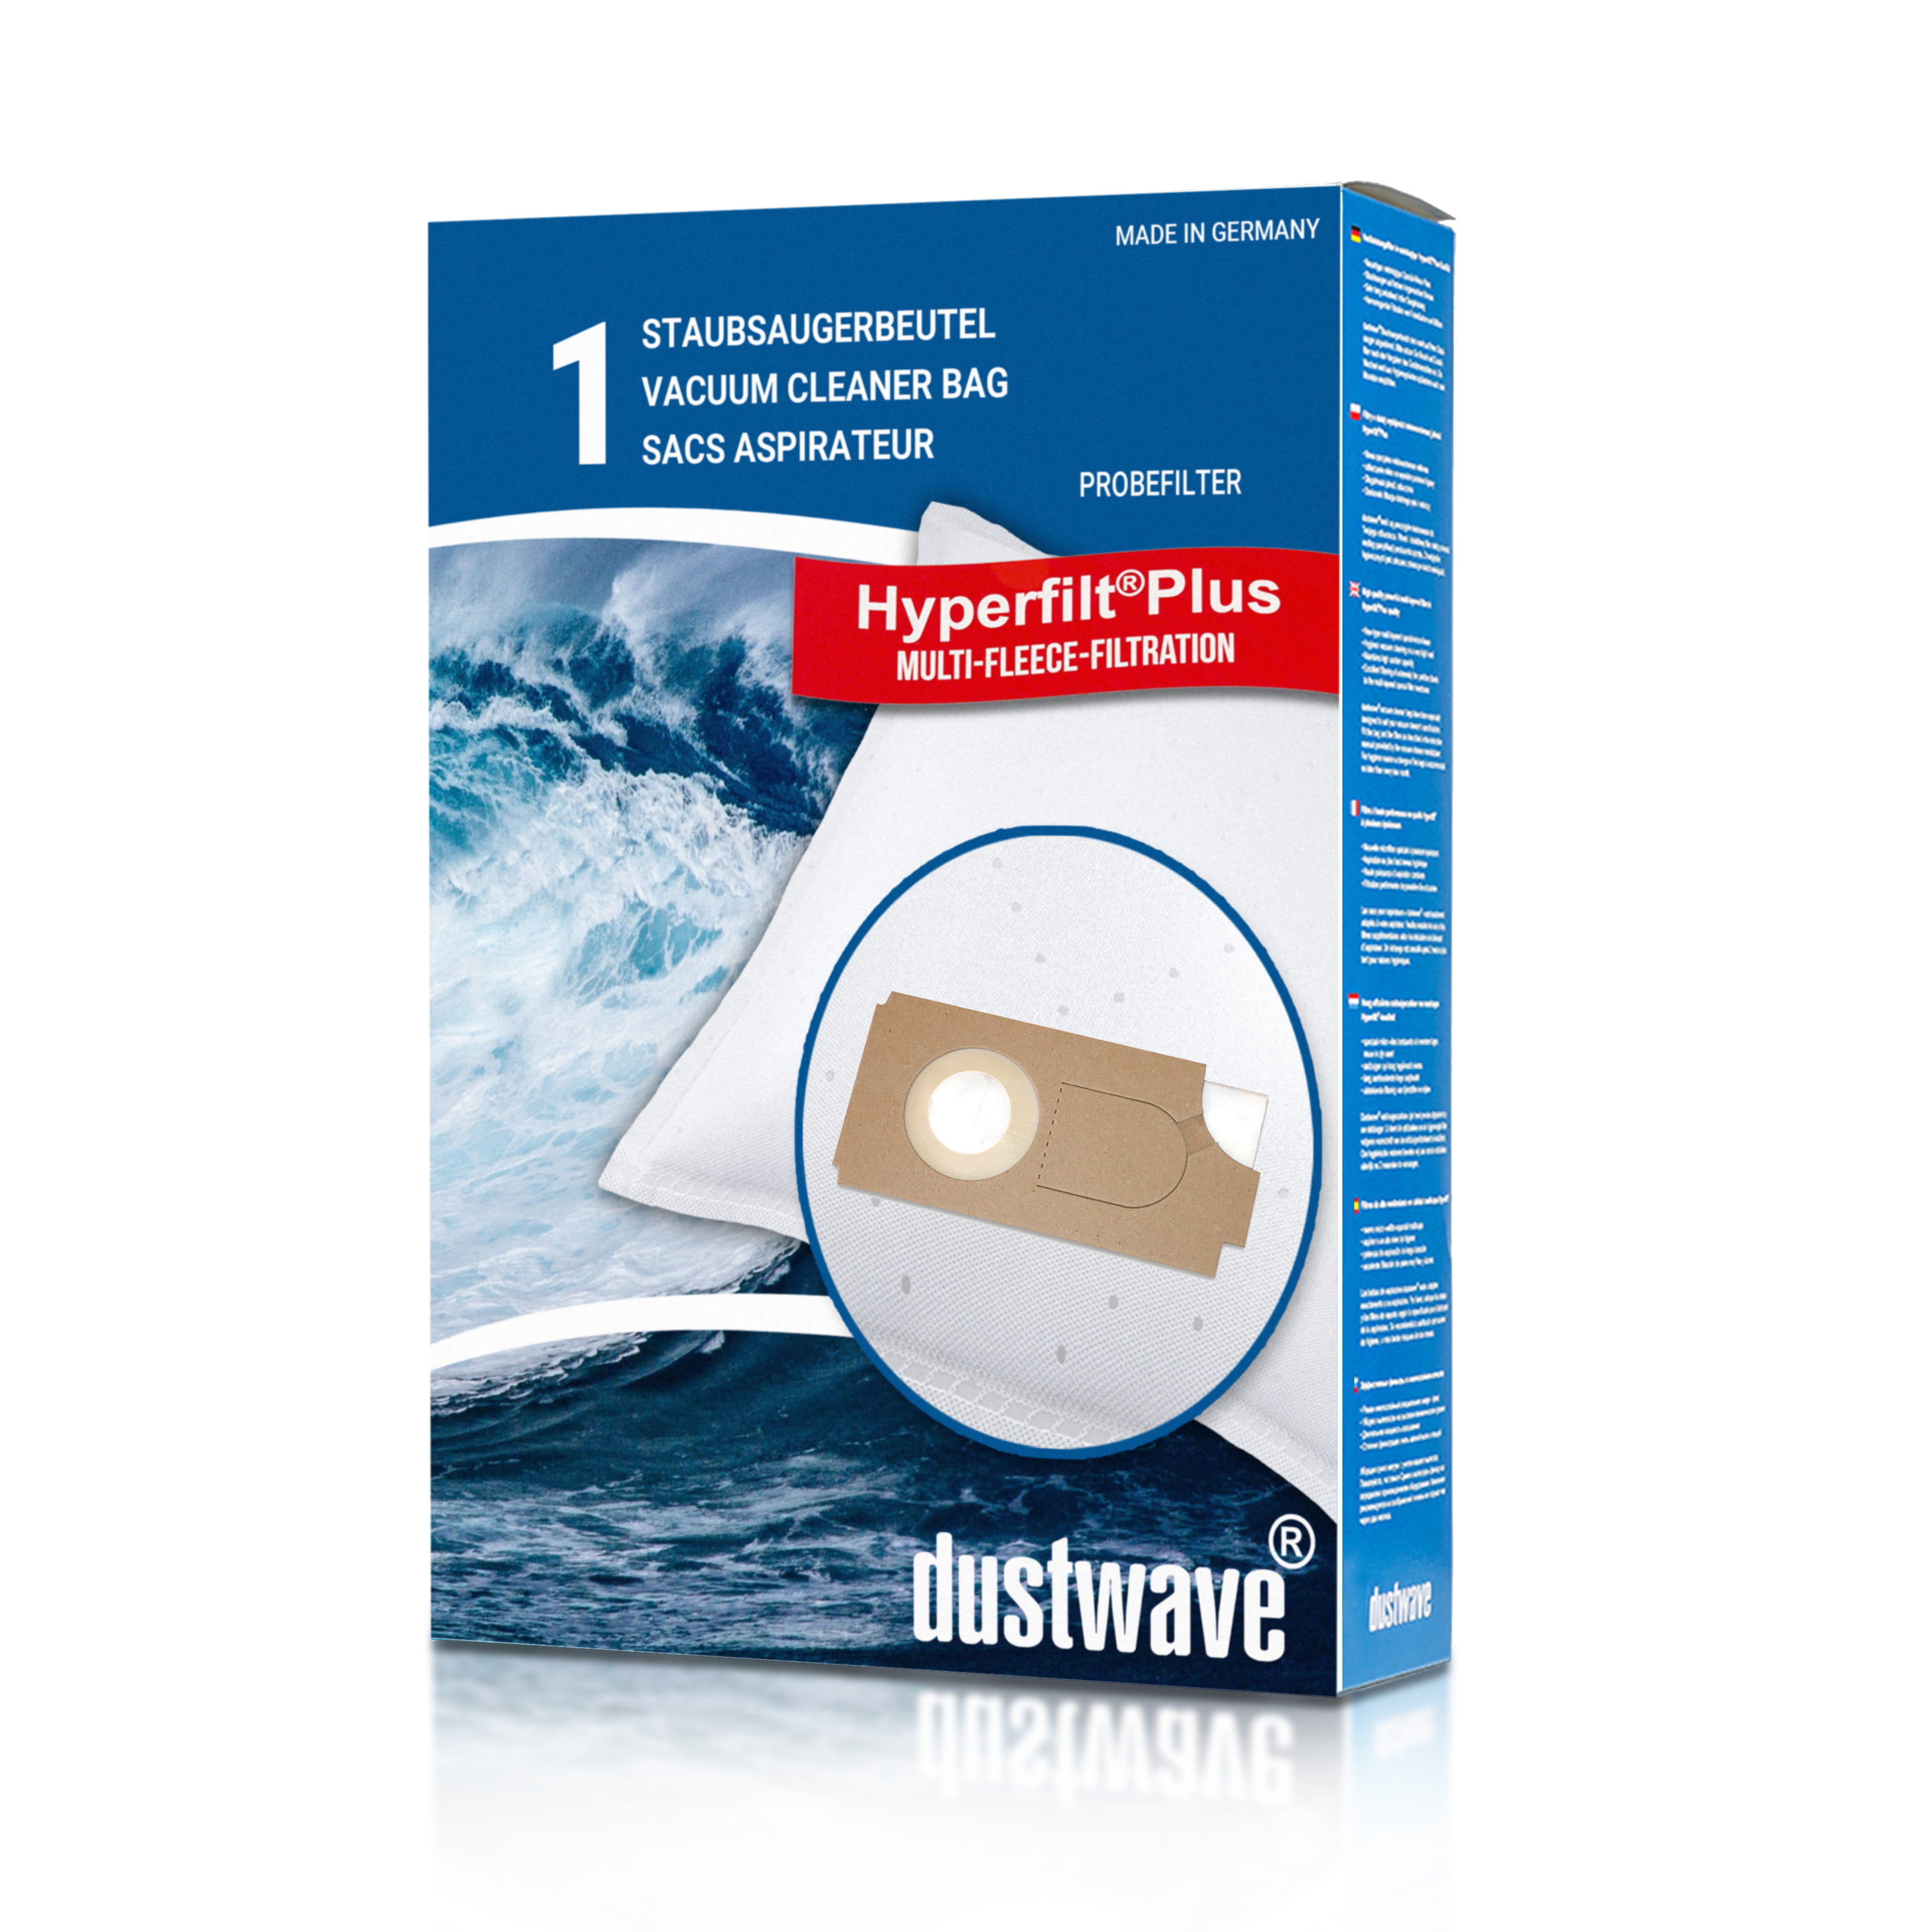 Dustwave® 1 Staubsaugerbeutel für Columbus TK 25 / TK25 - hocheffizient mit Hygieneverschluss - Made in Germany